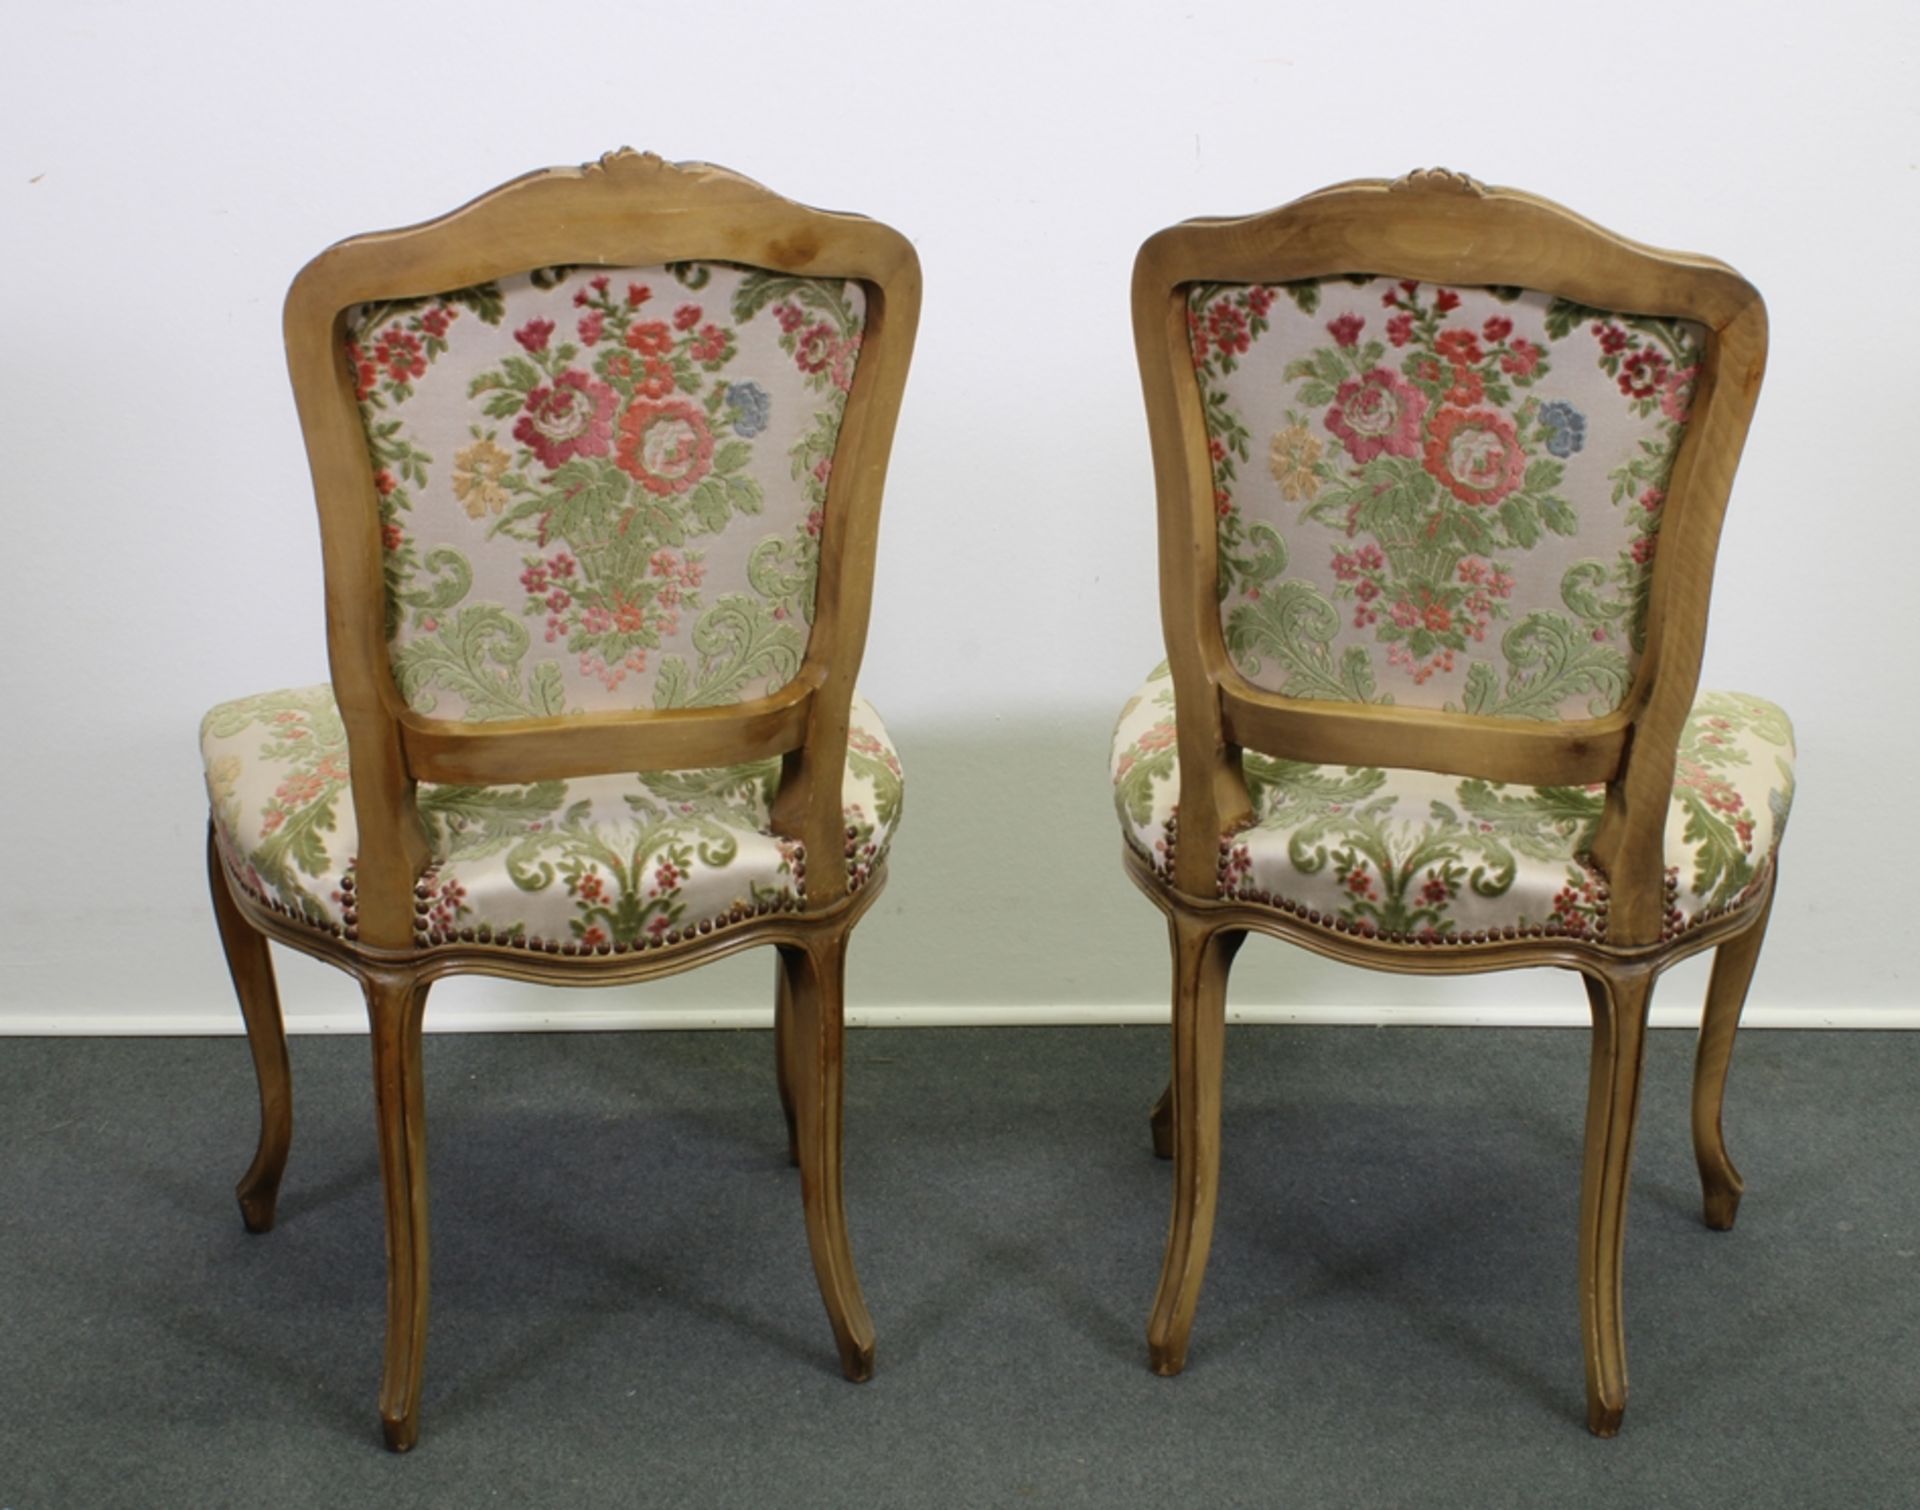 Paar Stühle, Louis XV-Stil, 19. Jh., Bezug mit floralem Motiv, H. 90 cm, leichte Gebrauchsspuren - Bild 2 aus 2